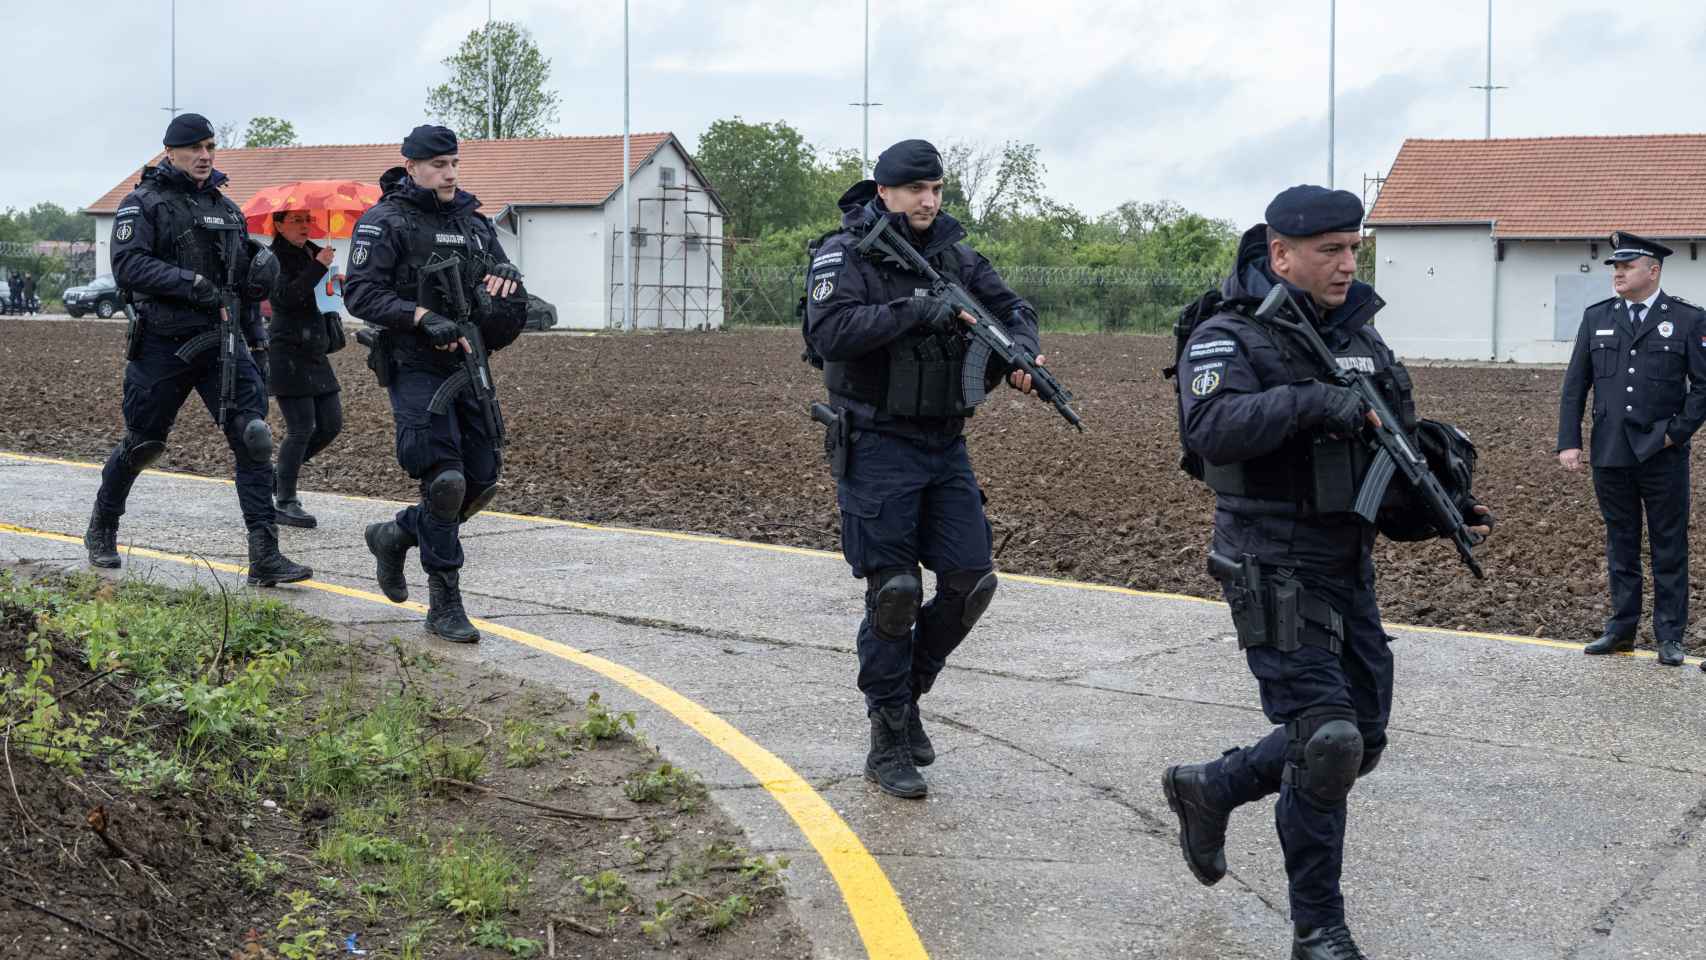 Oficiales de policía armados caminan frente a los almacenes donde se entregaron las armas a la policía en los primeros diez días de la amnistía de armas después de los tiroteos masivos en el país, cerca de Smederevo, Serbia, el 14 de mayo de 2023.